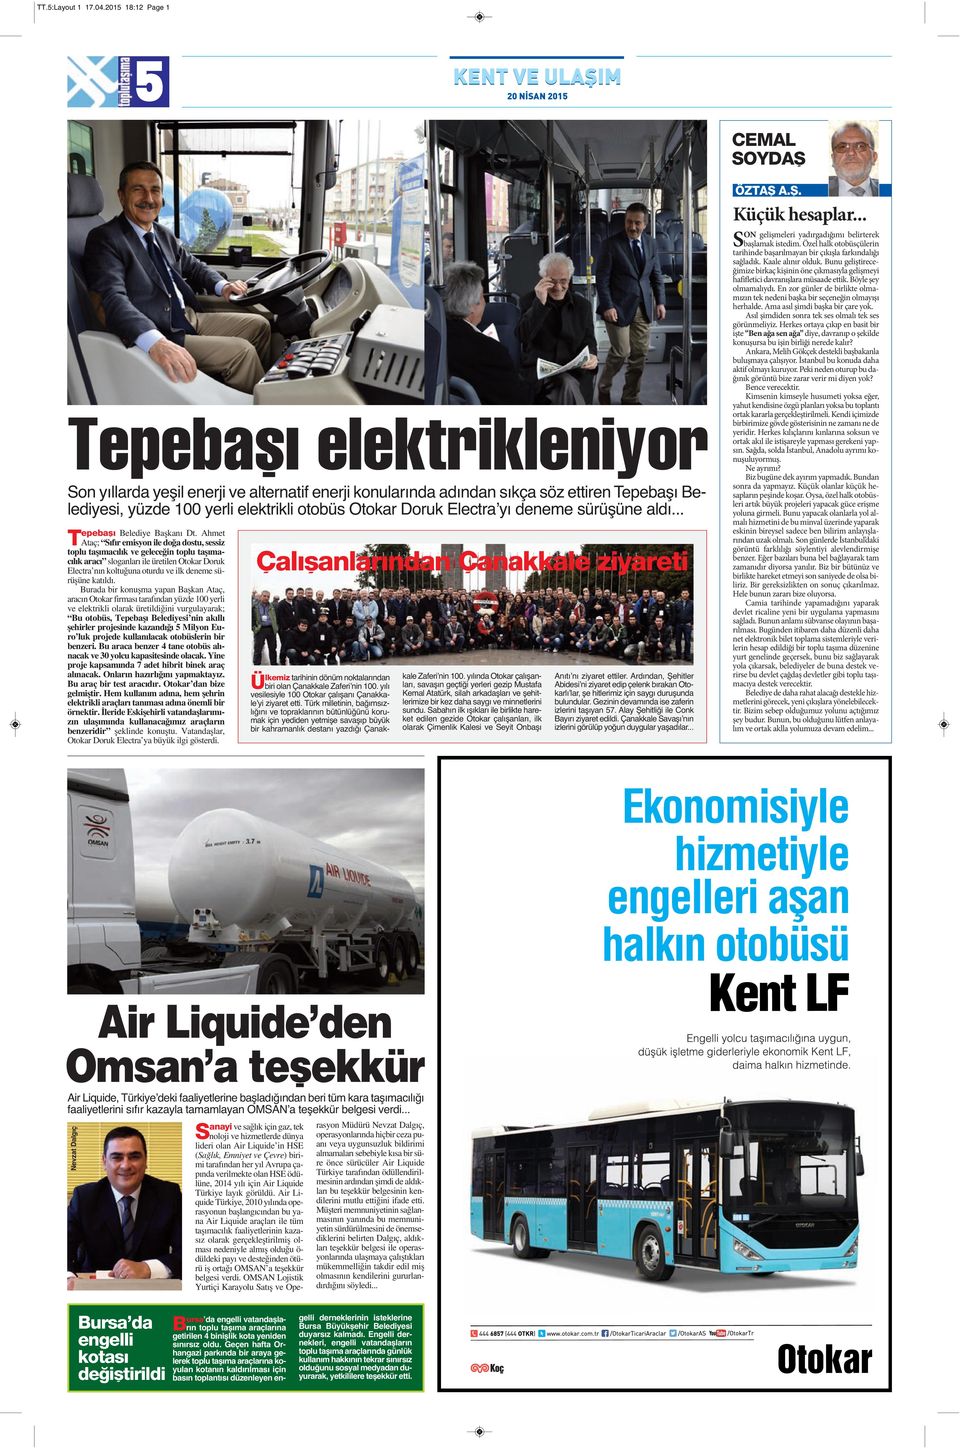 100 yerli elektrikli otobüs Otokar Doruk Electraʼyı deneme sürüşüne aldı... Tepebaşı Belediye Başkanı Dt.